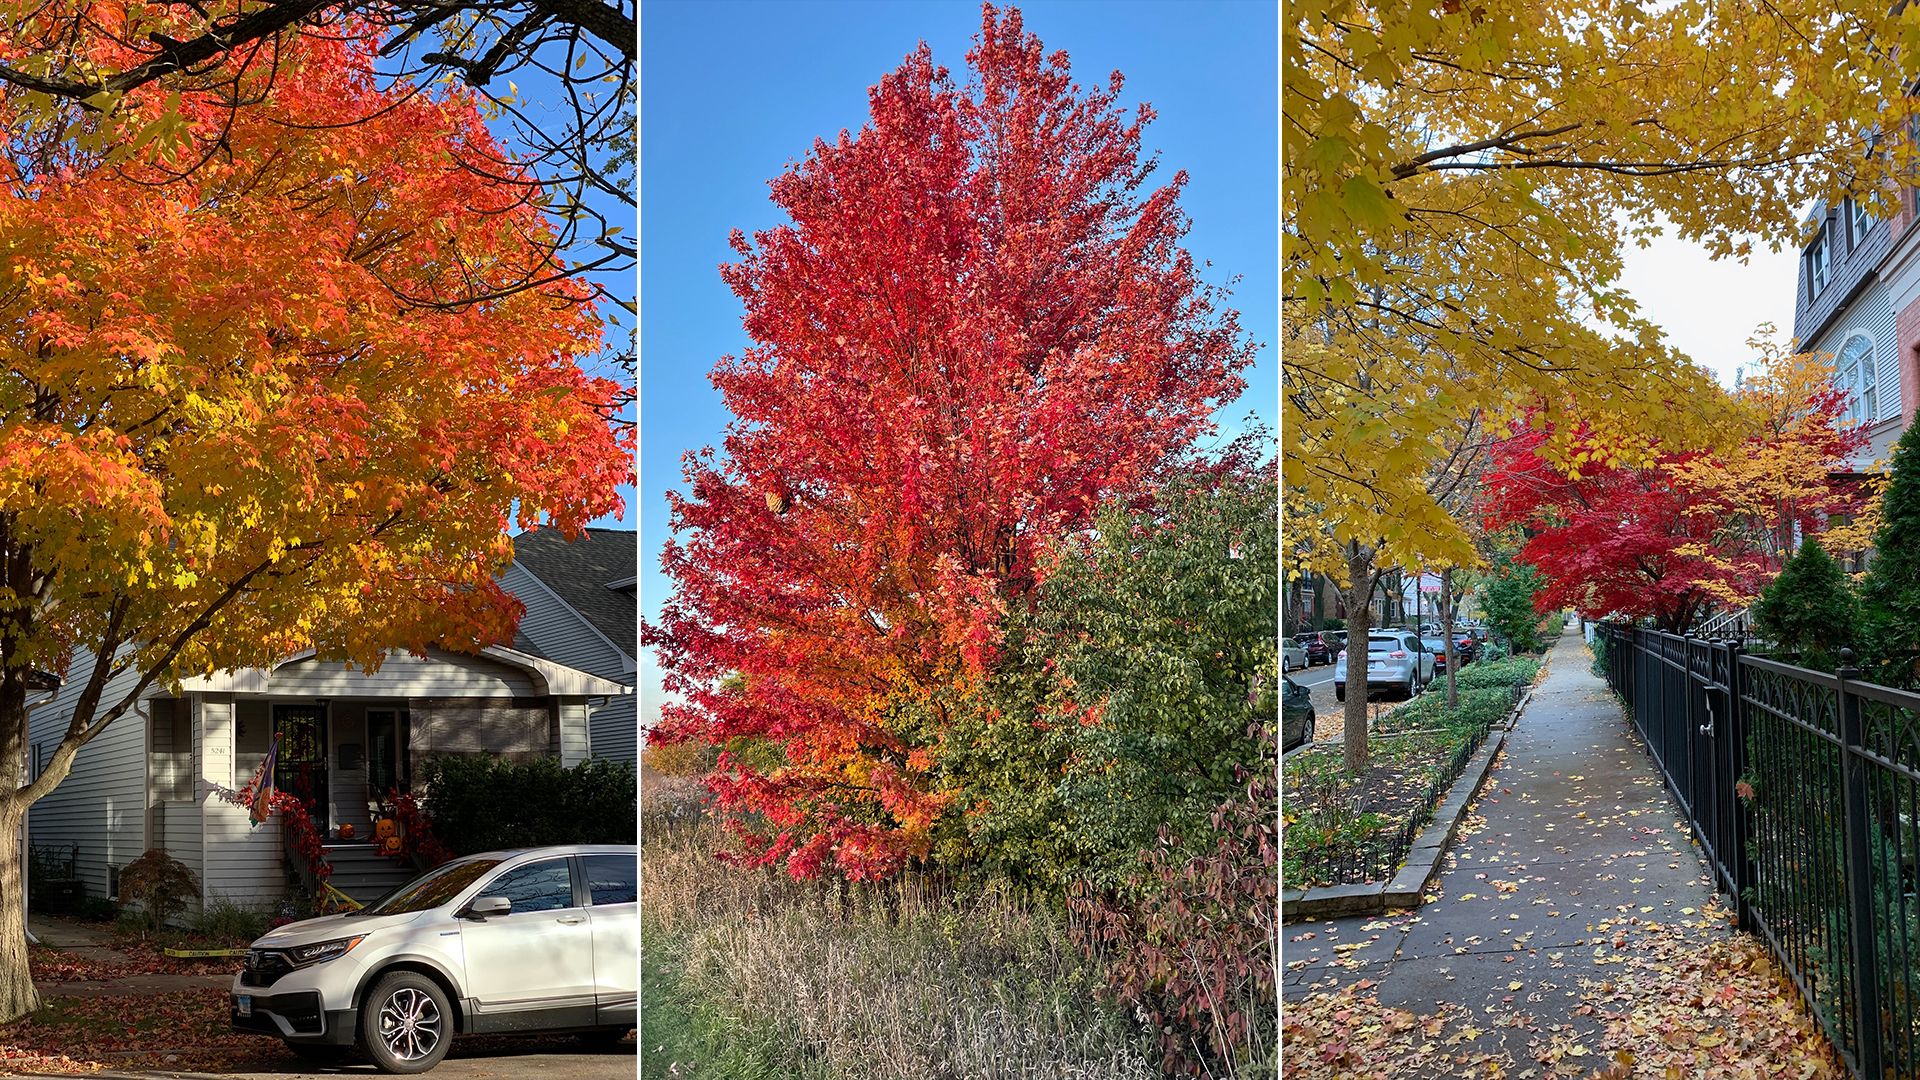 Pretty fall trees. 